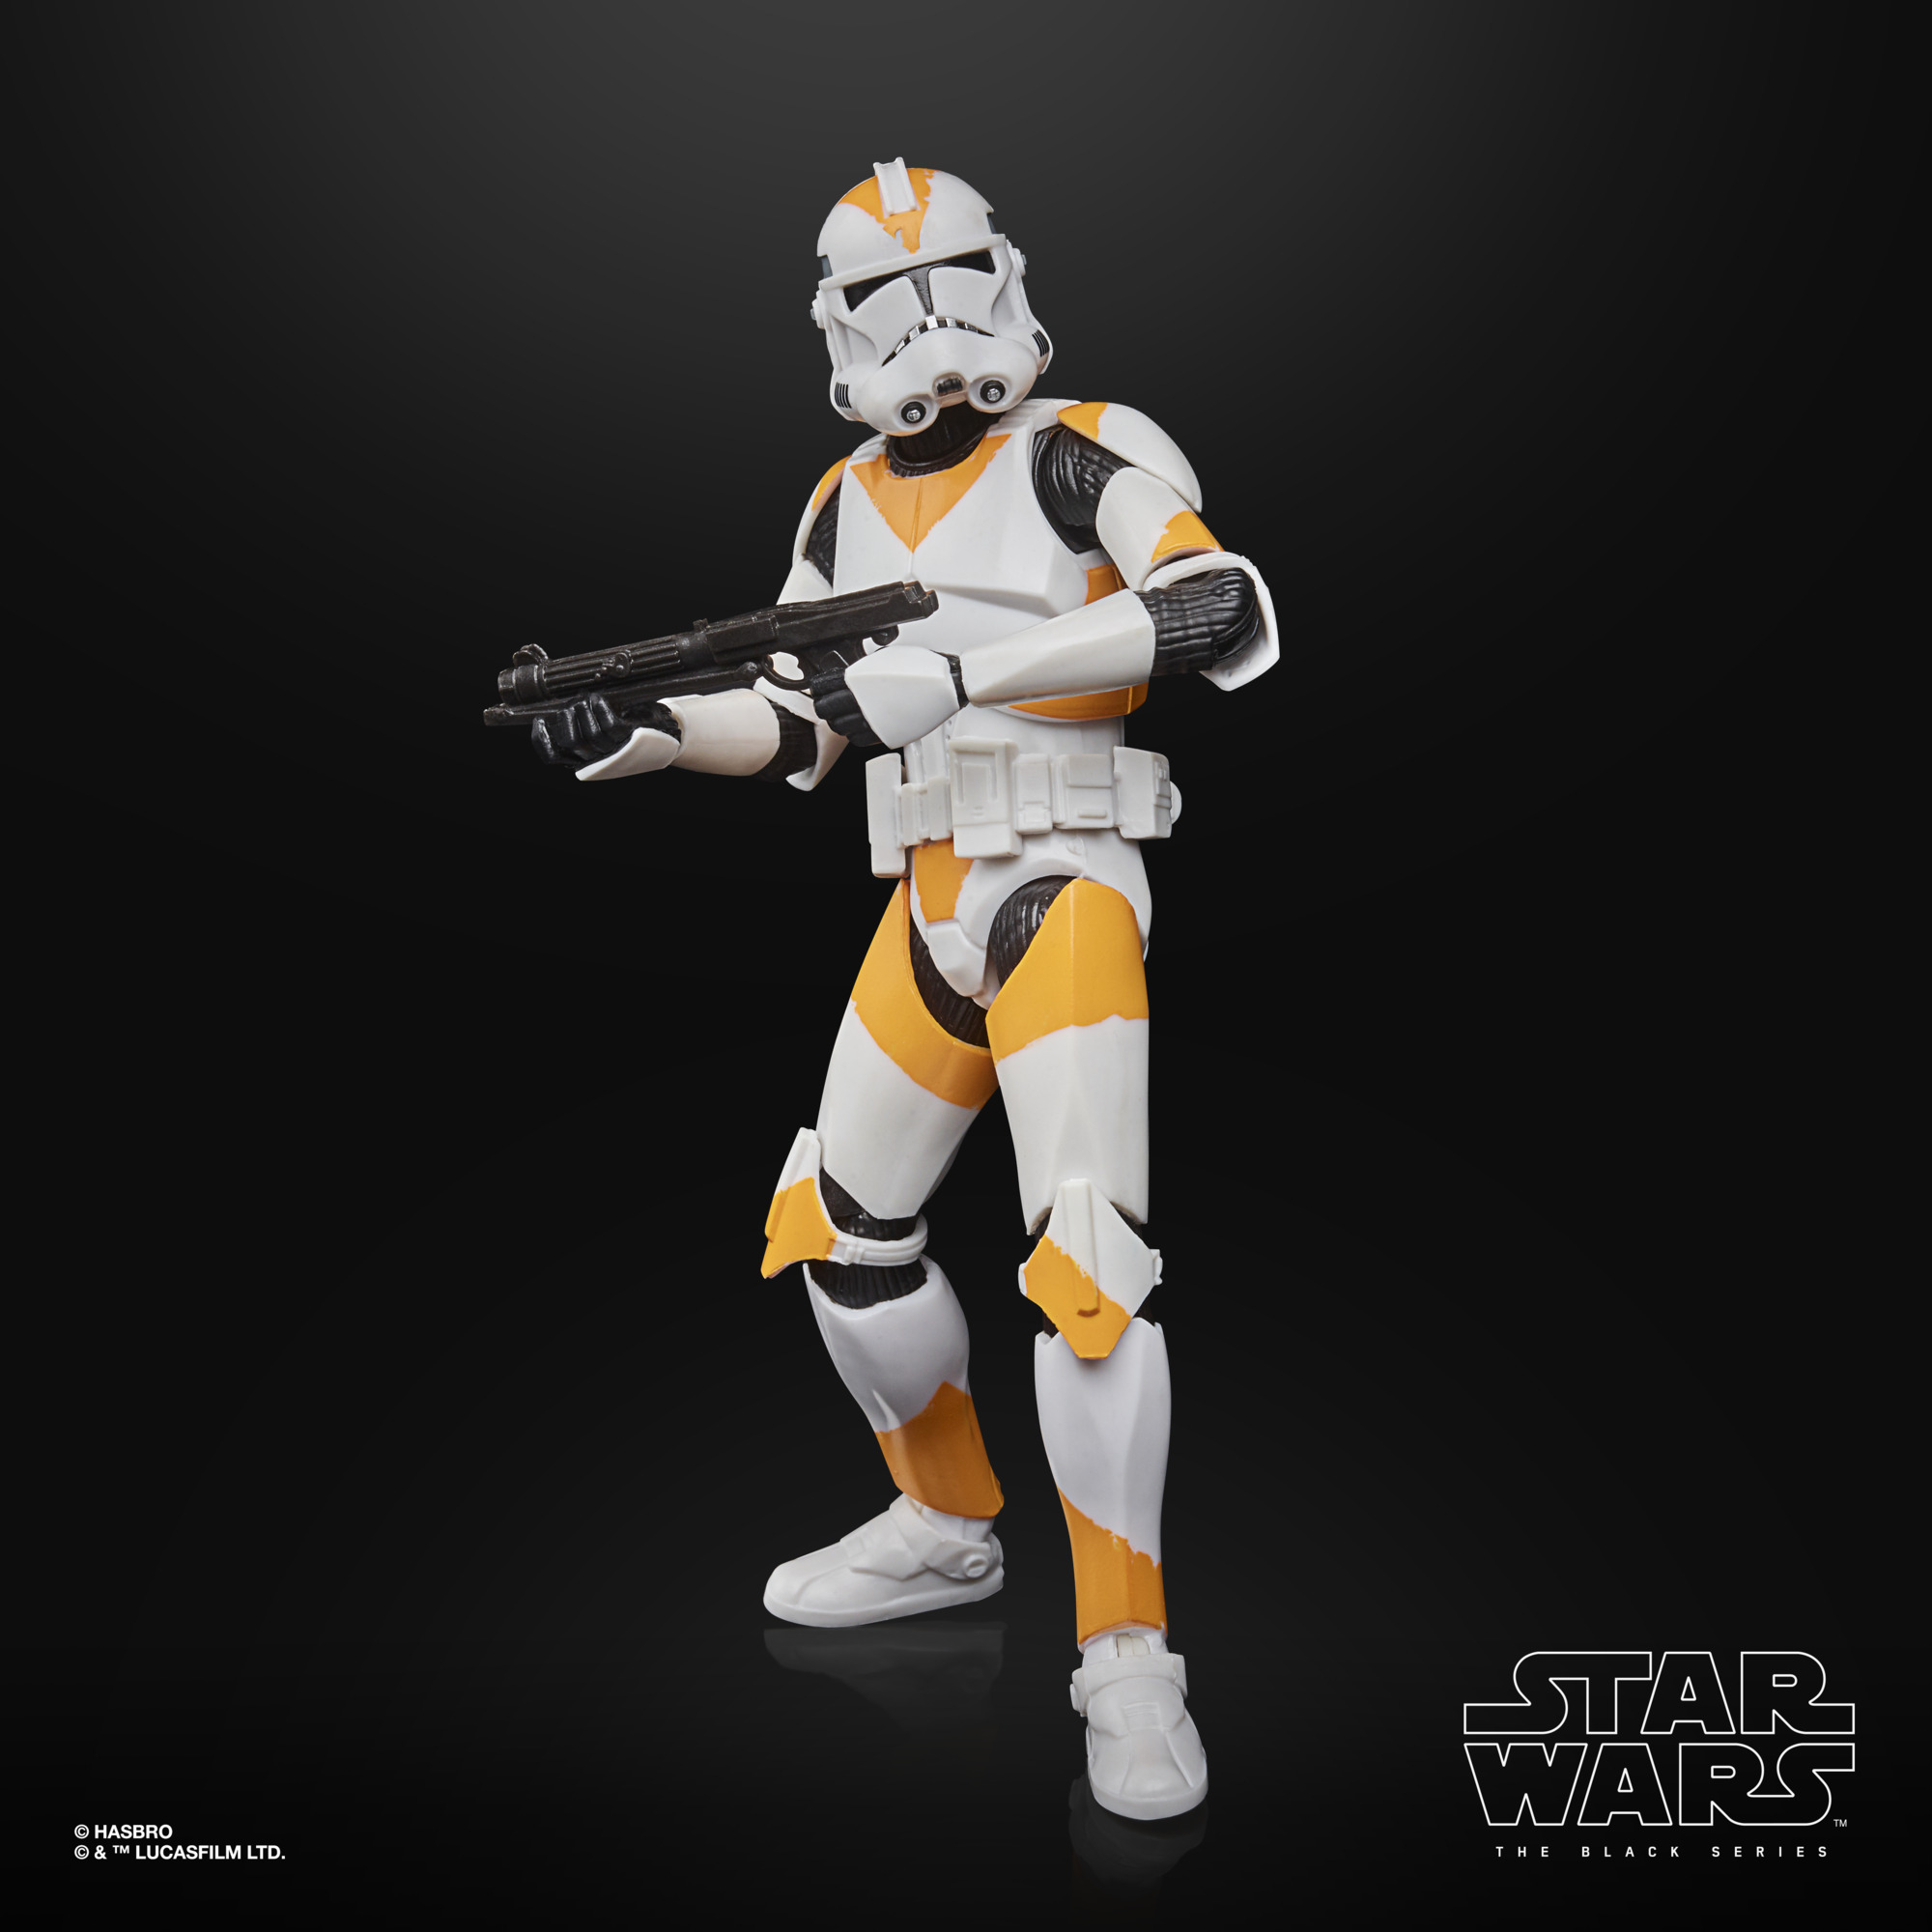 Star Wars The Black Series Clone Trooper (212th Battalion) F28185L0 5010993911844